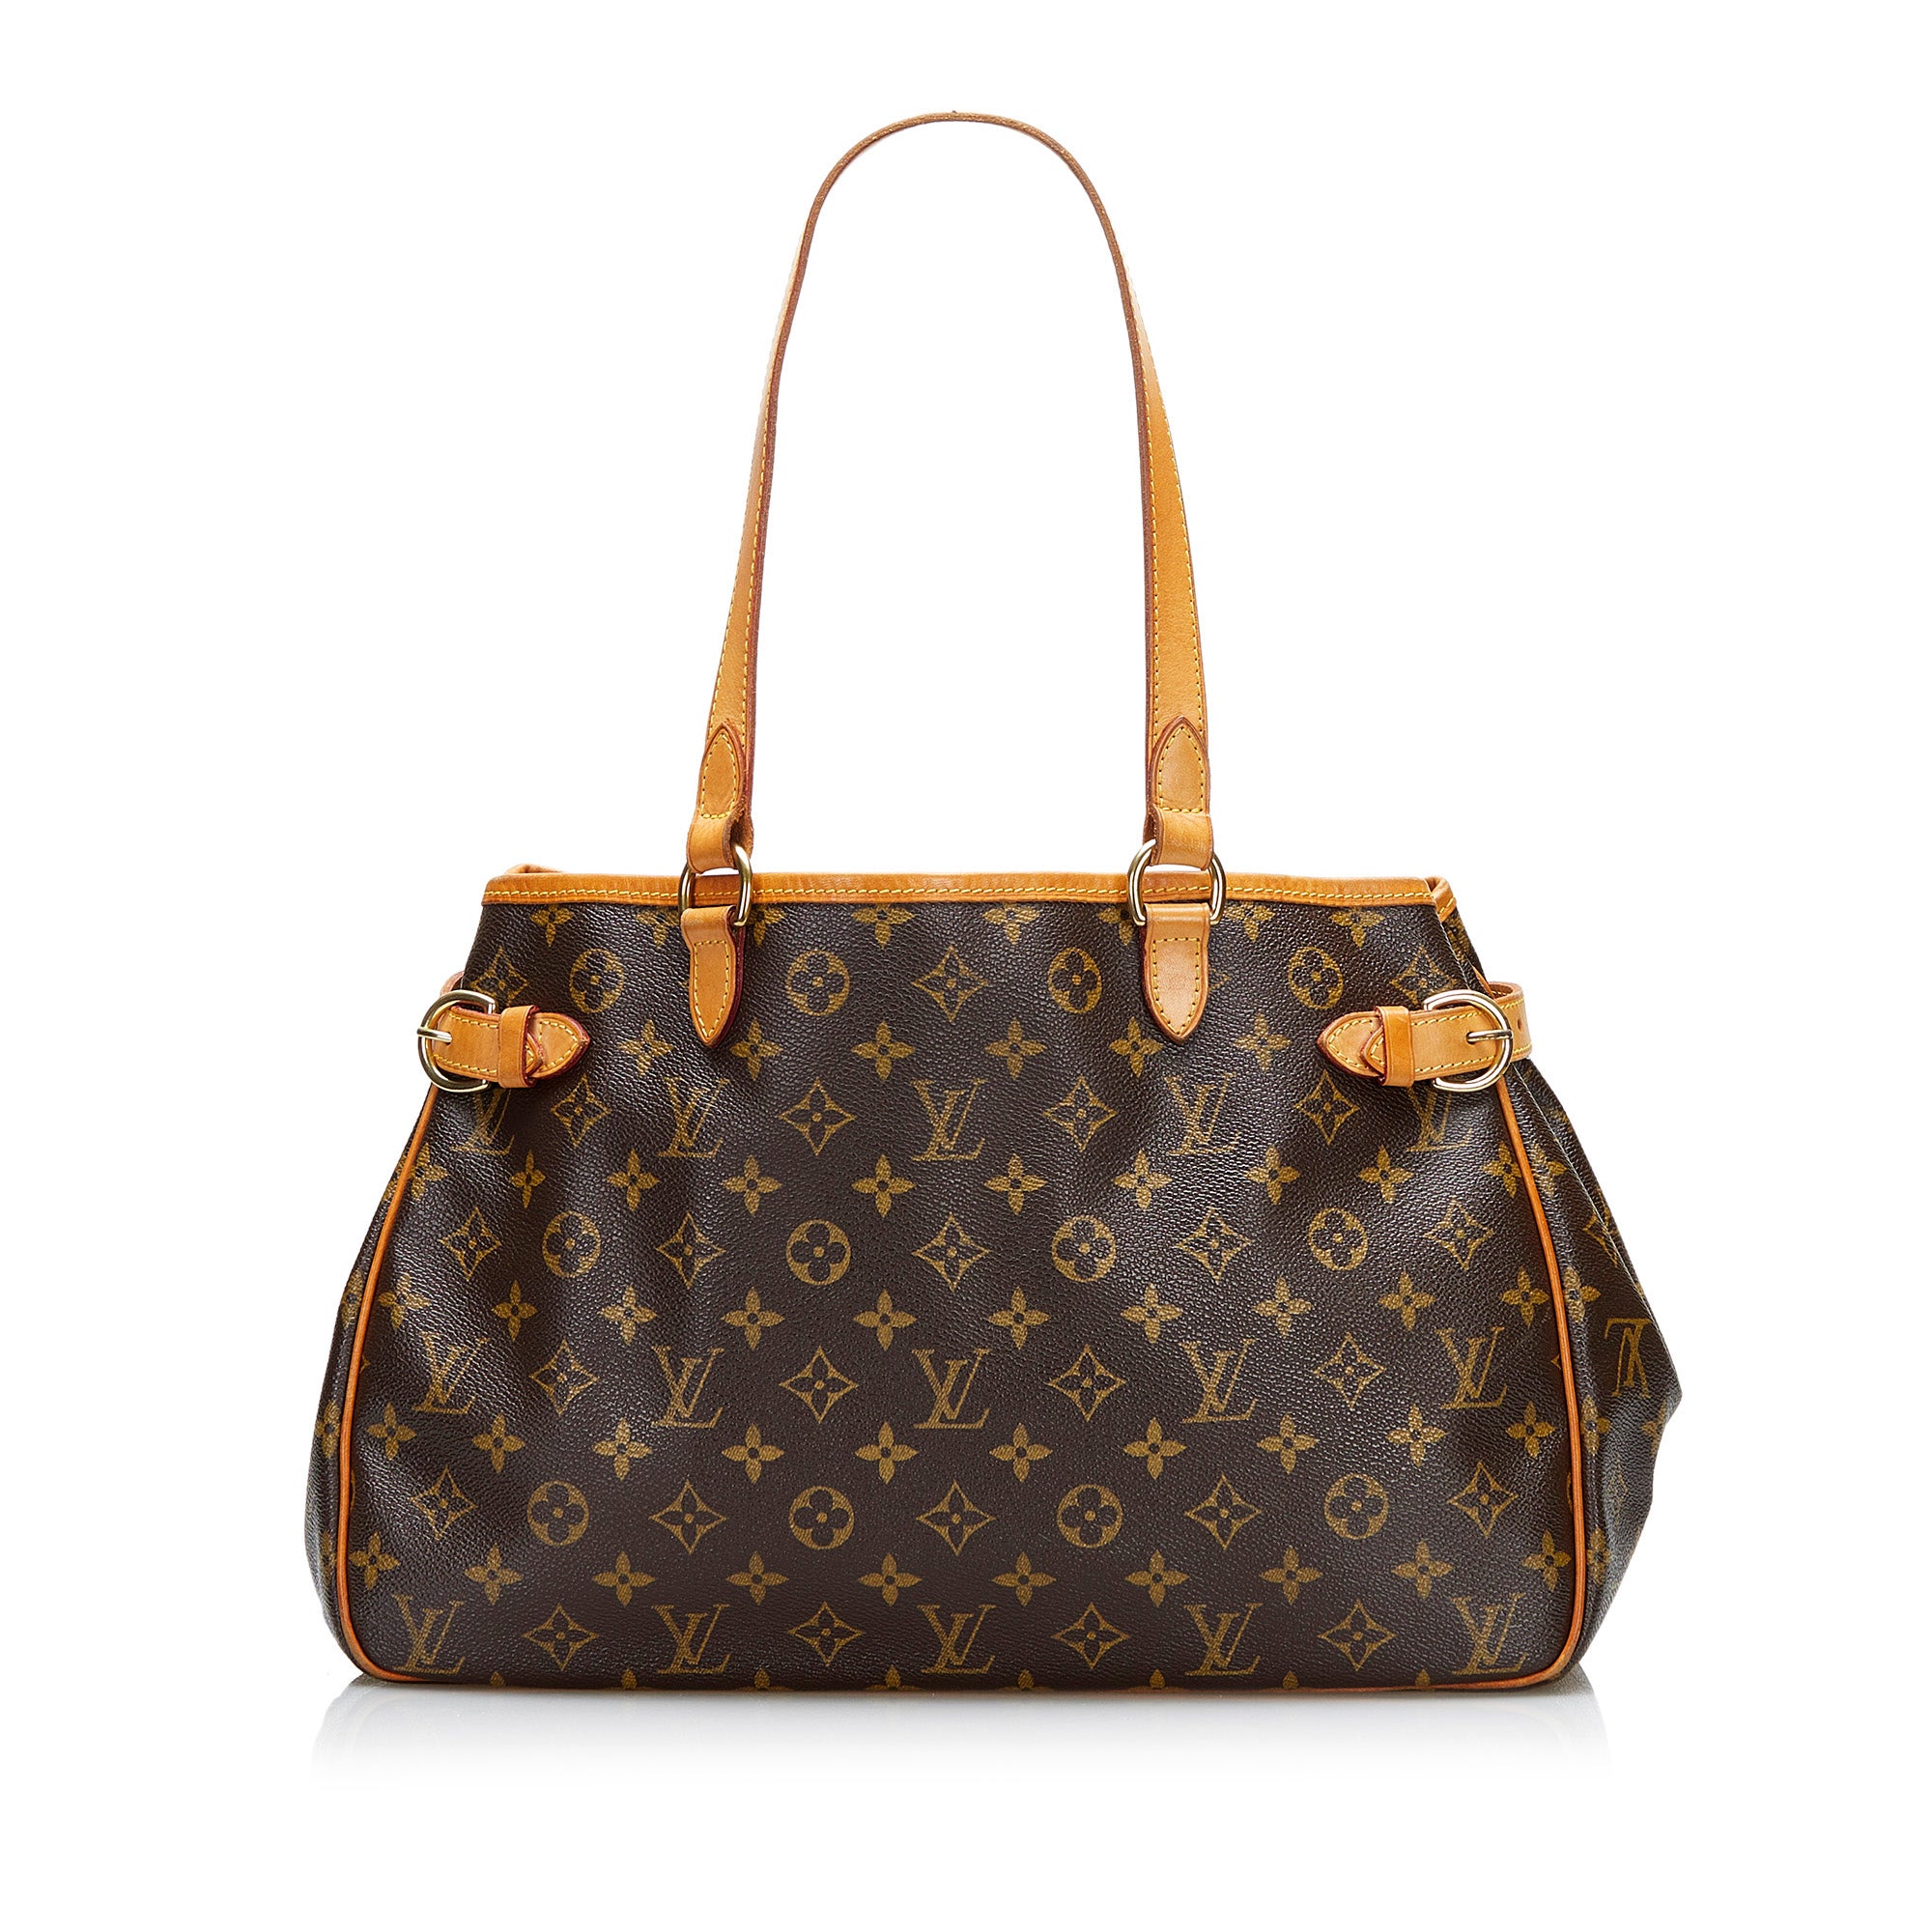 Authentic Louis Vuitton lockit horizontal GM hand/shoulder bag as